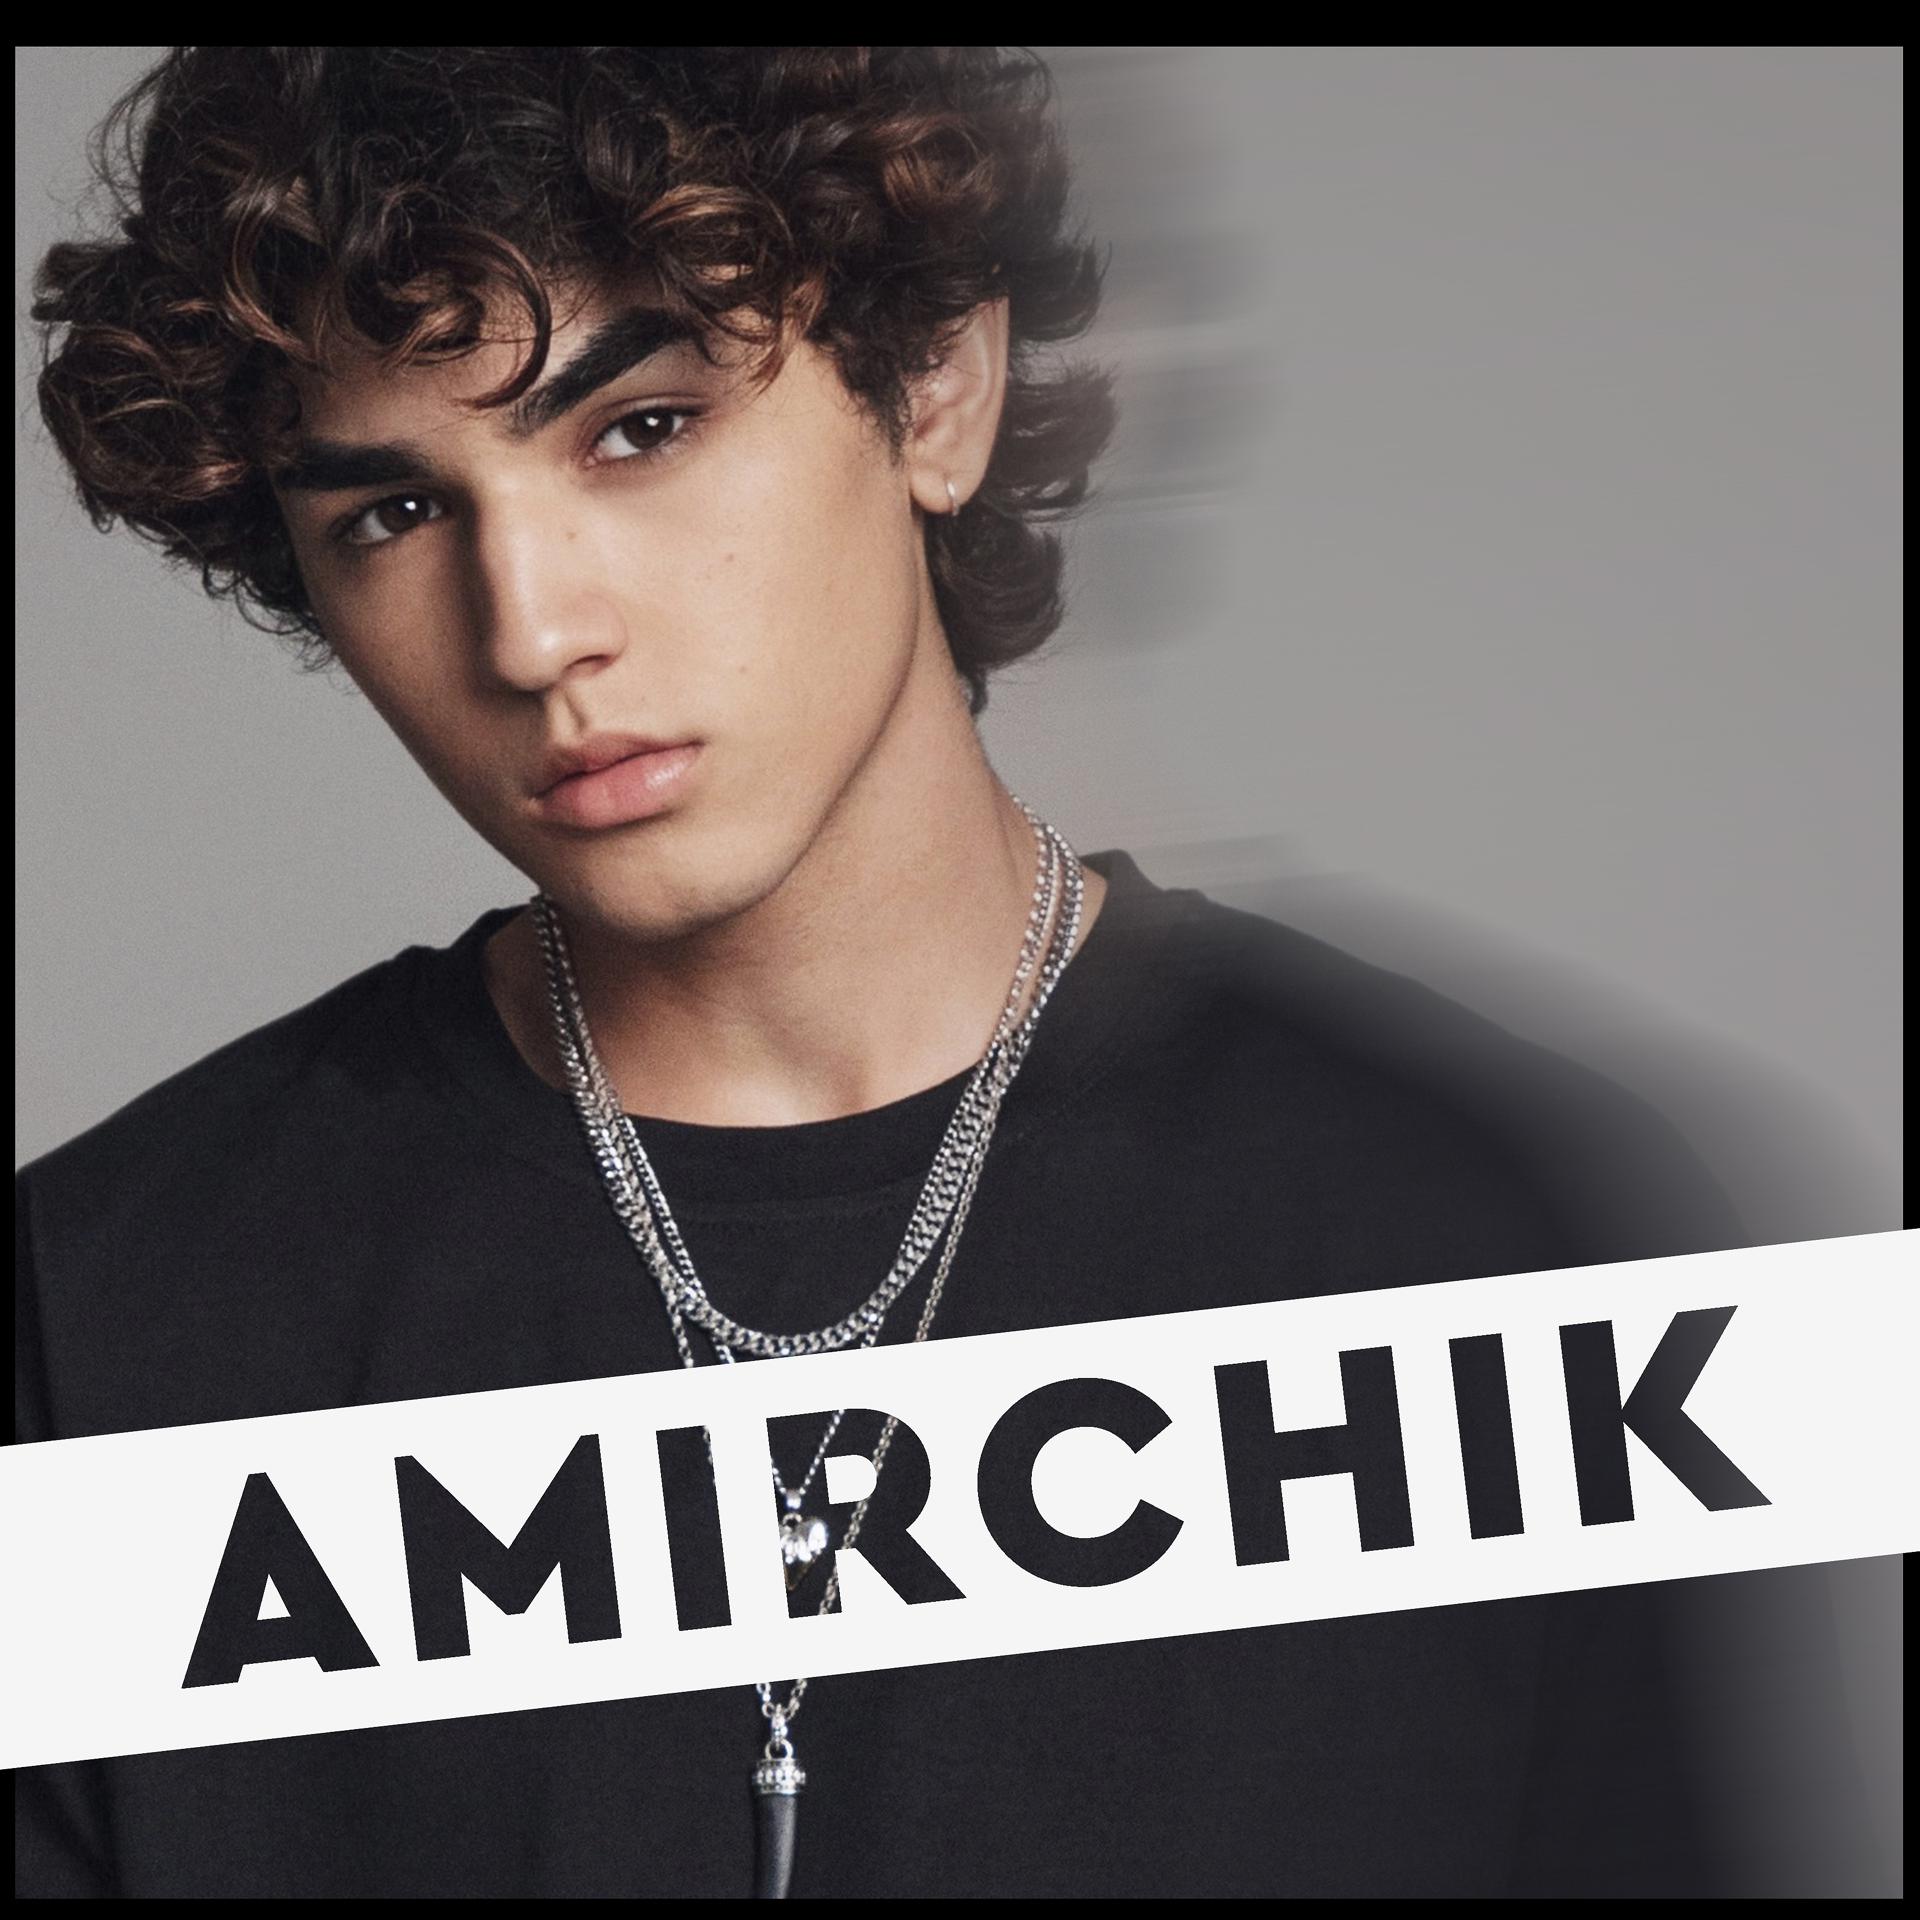 Amirchik - Мысли в голове